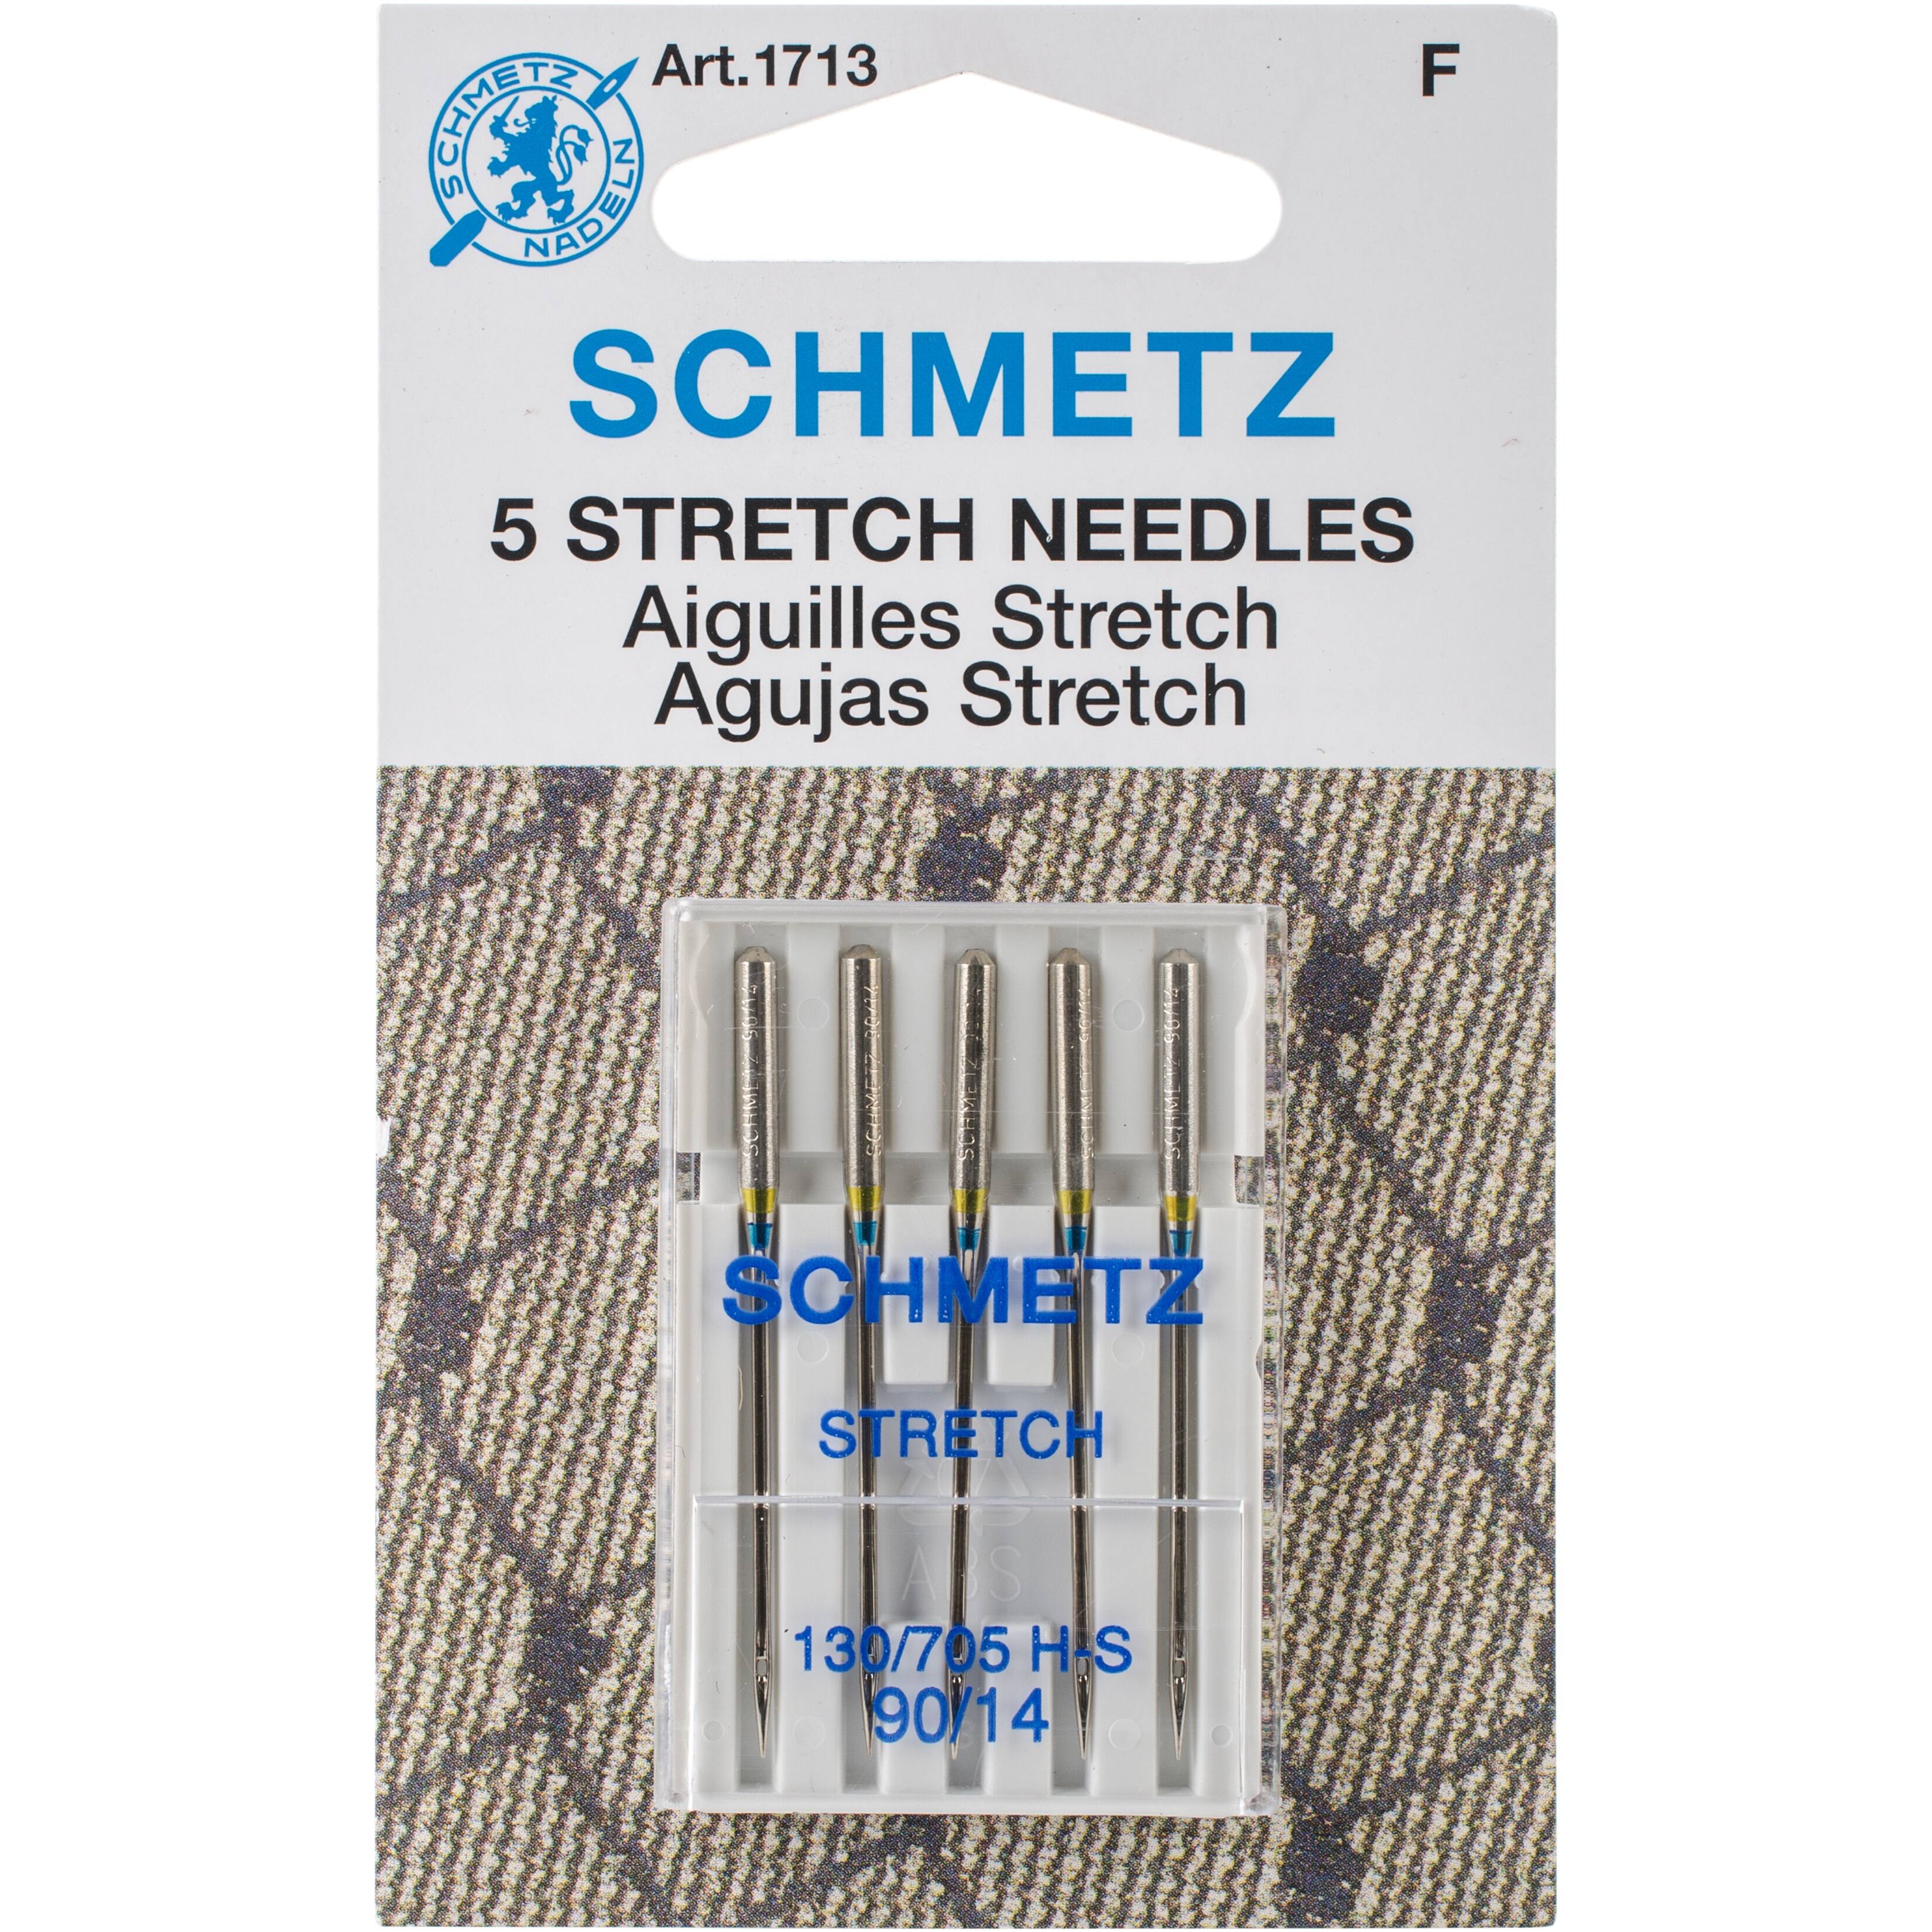 SCHMETZ Stretch Machine Needles, 14/90